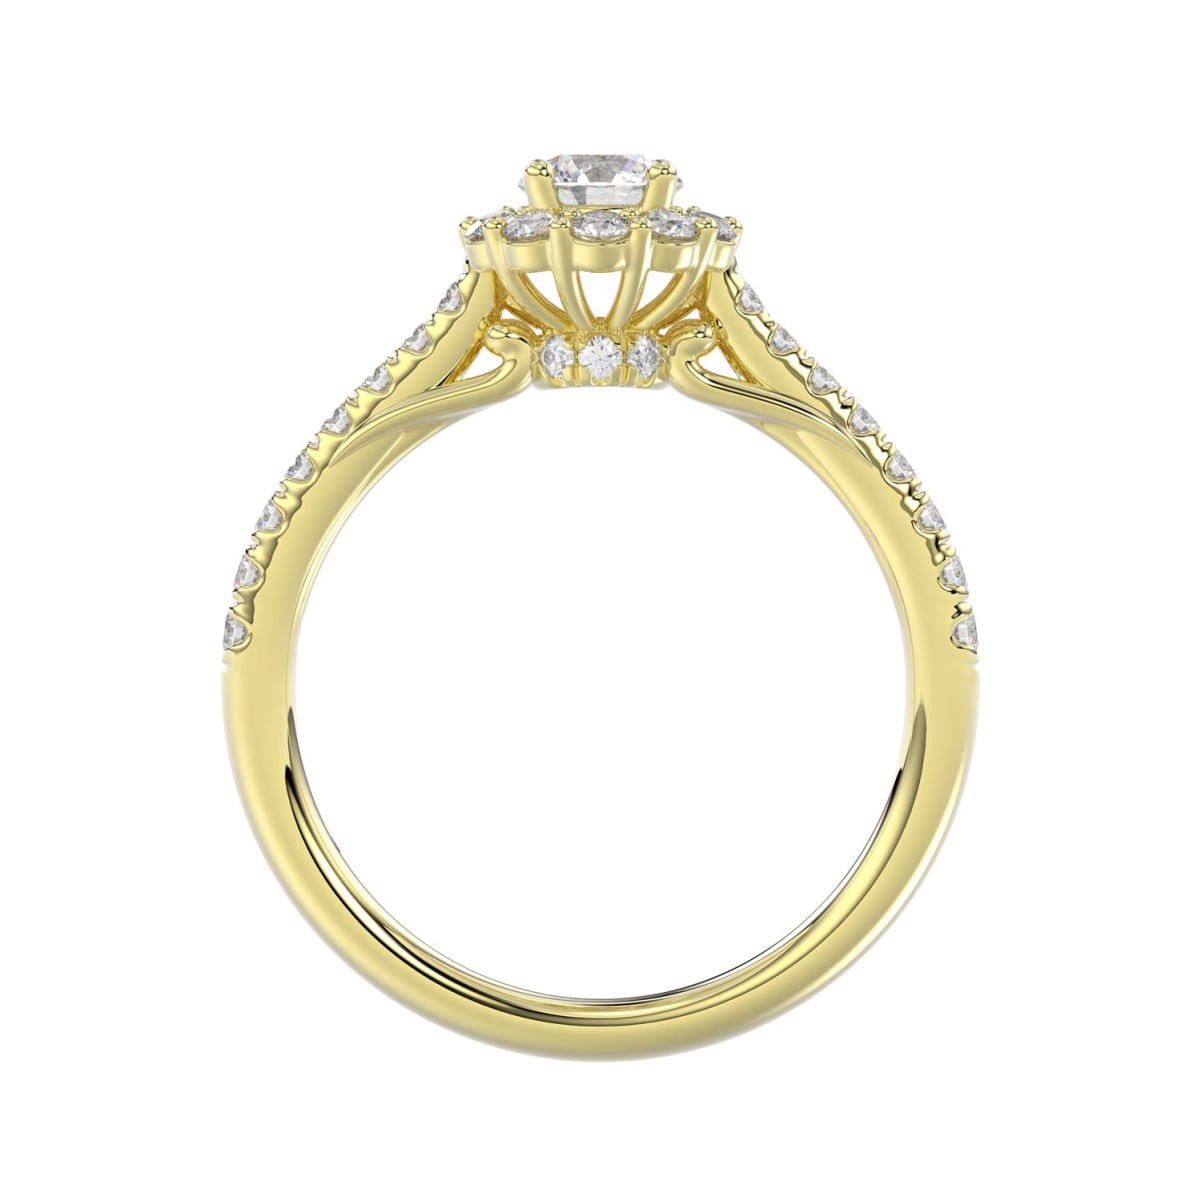 14K YELLOW GOLD 3/4CT ROUND DIAMOND LADIES RING( CENTER STONE ROUND DIAMOND 1/3CT)